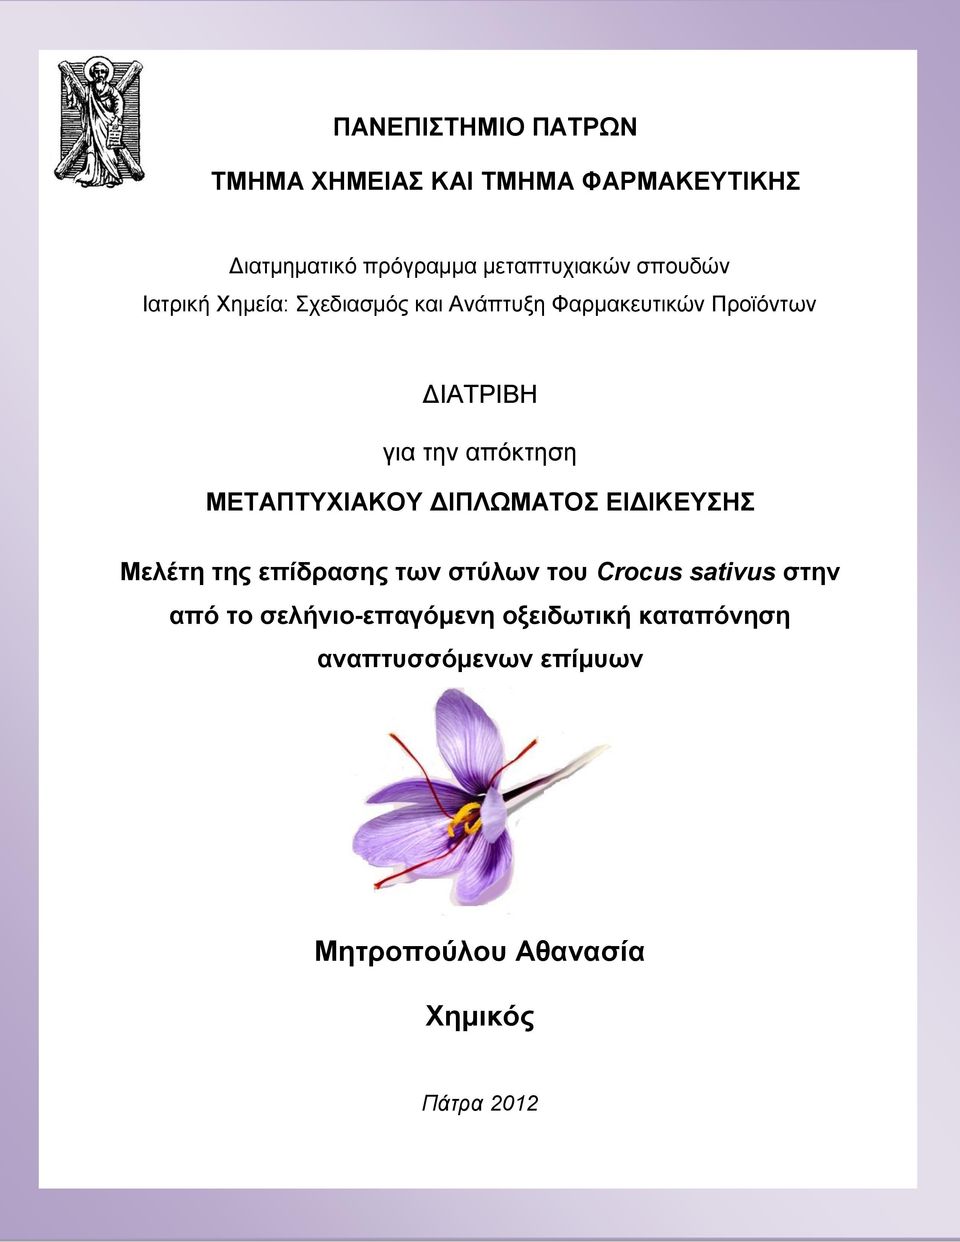 ΜΕΤΑΠΤΥΧΙΑΚΟΥ ΔΙΠΛΩΜΑΤΟΣ ΕΙΔΙΚΕΥΣΗΣ Μελέτη της επίδρασης των στύλων του Crocus sativus στην από το